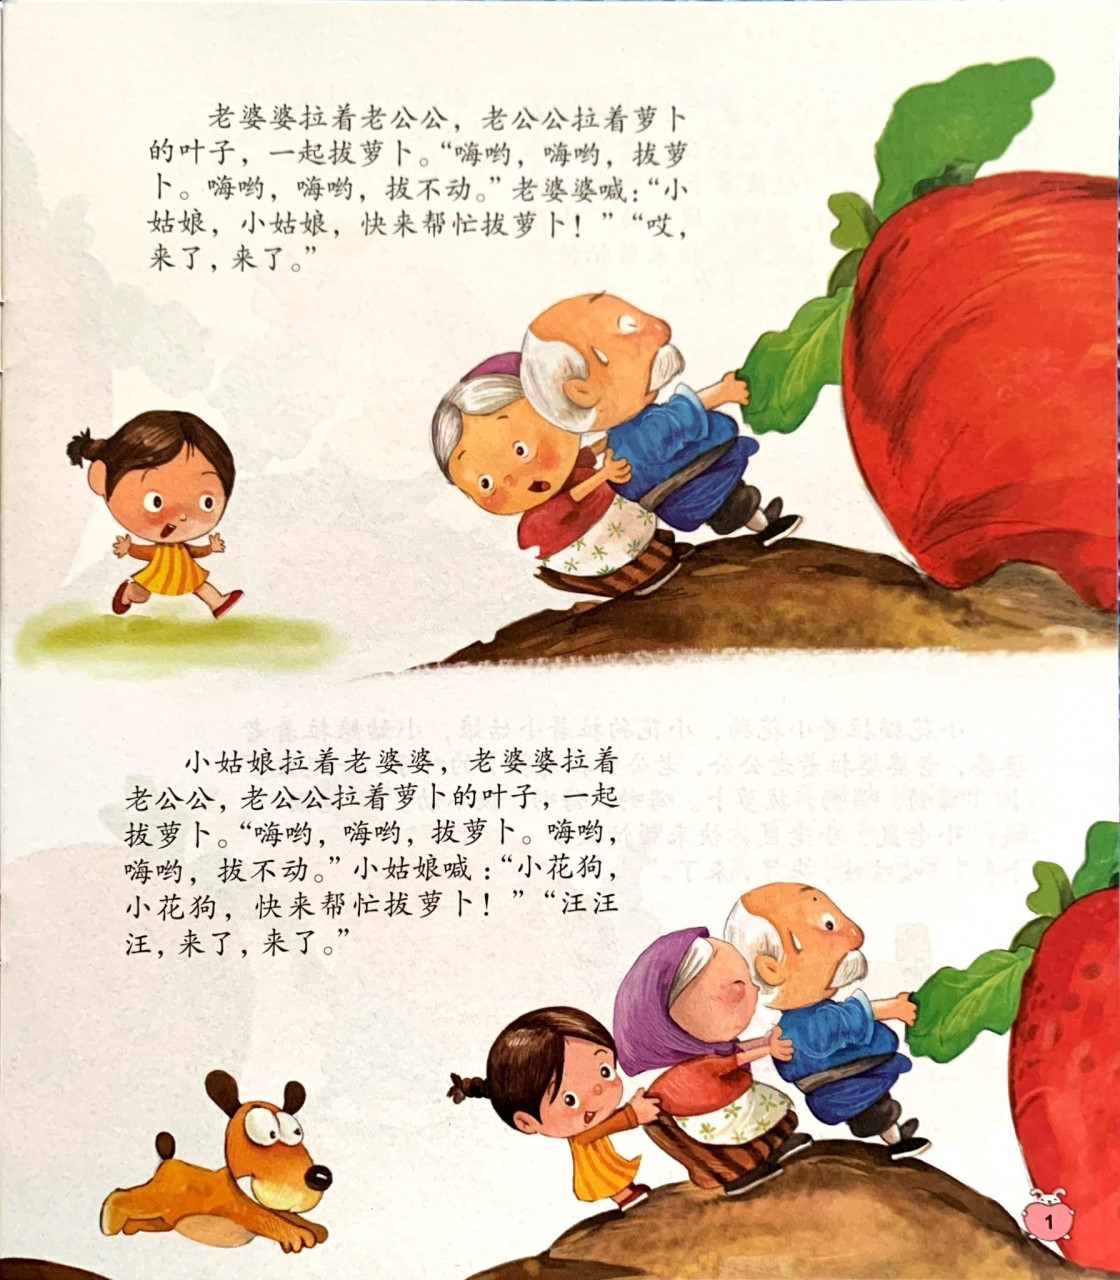 《拔萝卜》故事·绘本 绘本故事:《拔萝卜》 故事角色:老爷爷,老奶奶